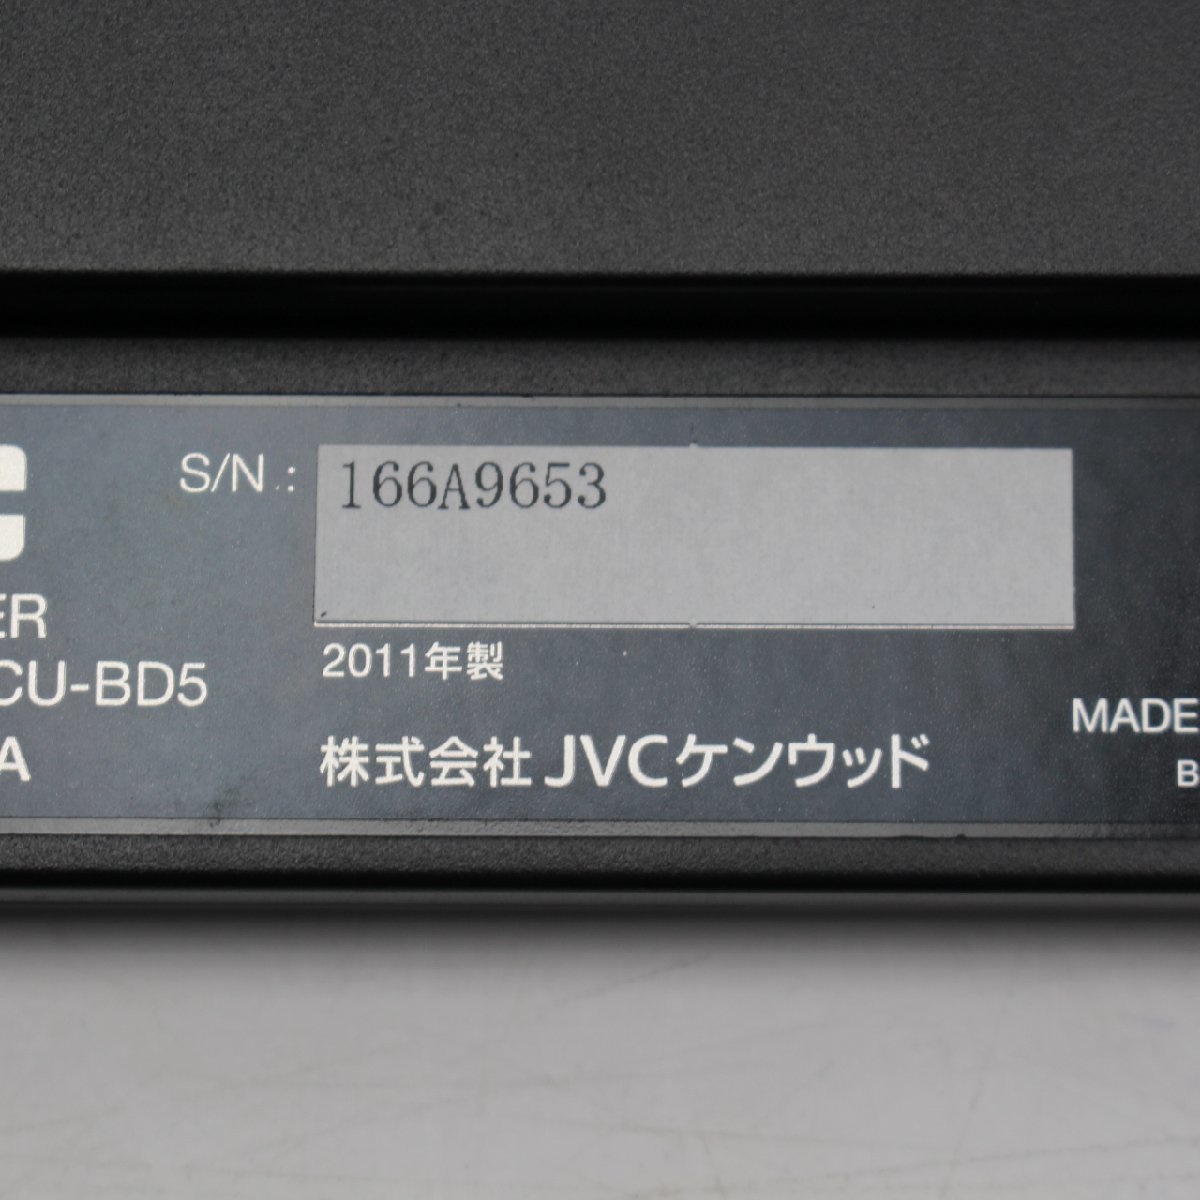 360)JVC Everio CU-BD5 BDライター HD GZ-HM460-G デジタルビデオカメラ 2011年製_画像3